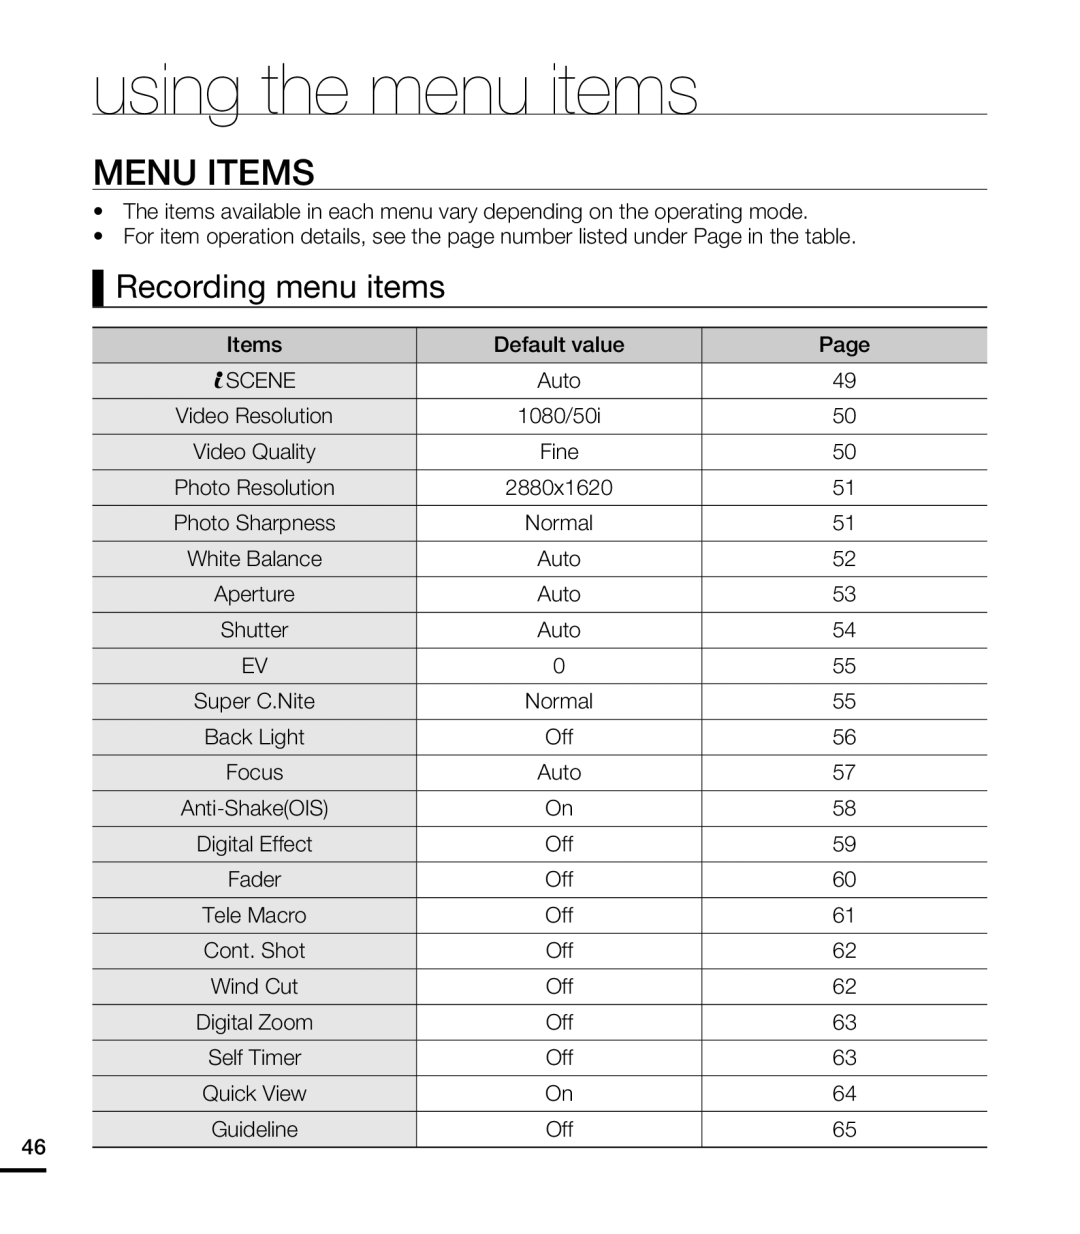 Samsung HMX-T10BP/MEA, HMX-T10WP/EDC, HMX-T10OP/EDC, HMX-T10WP/XEU Menu Items, Recording menu items, using the menu items 